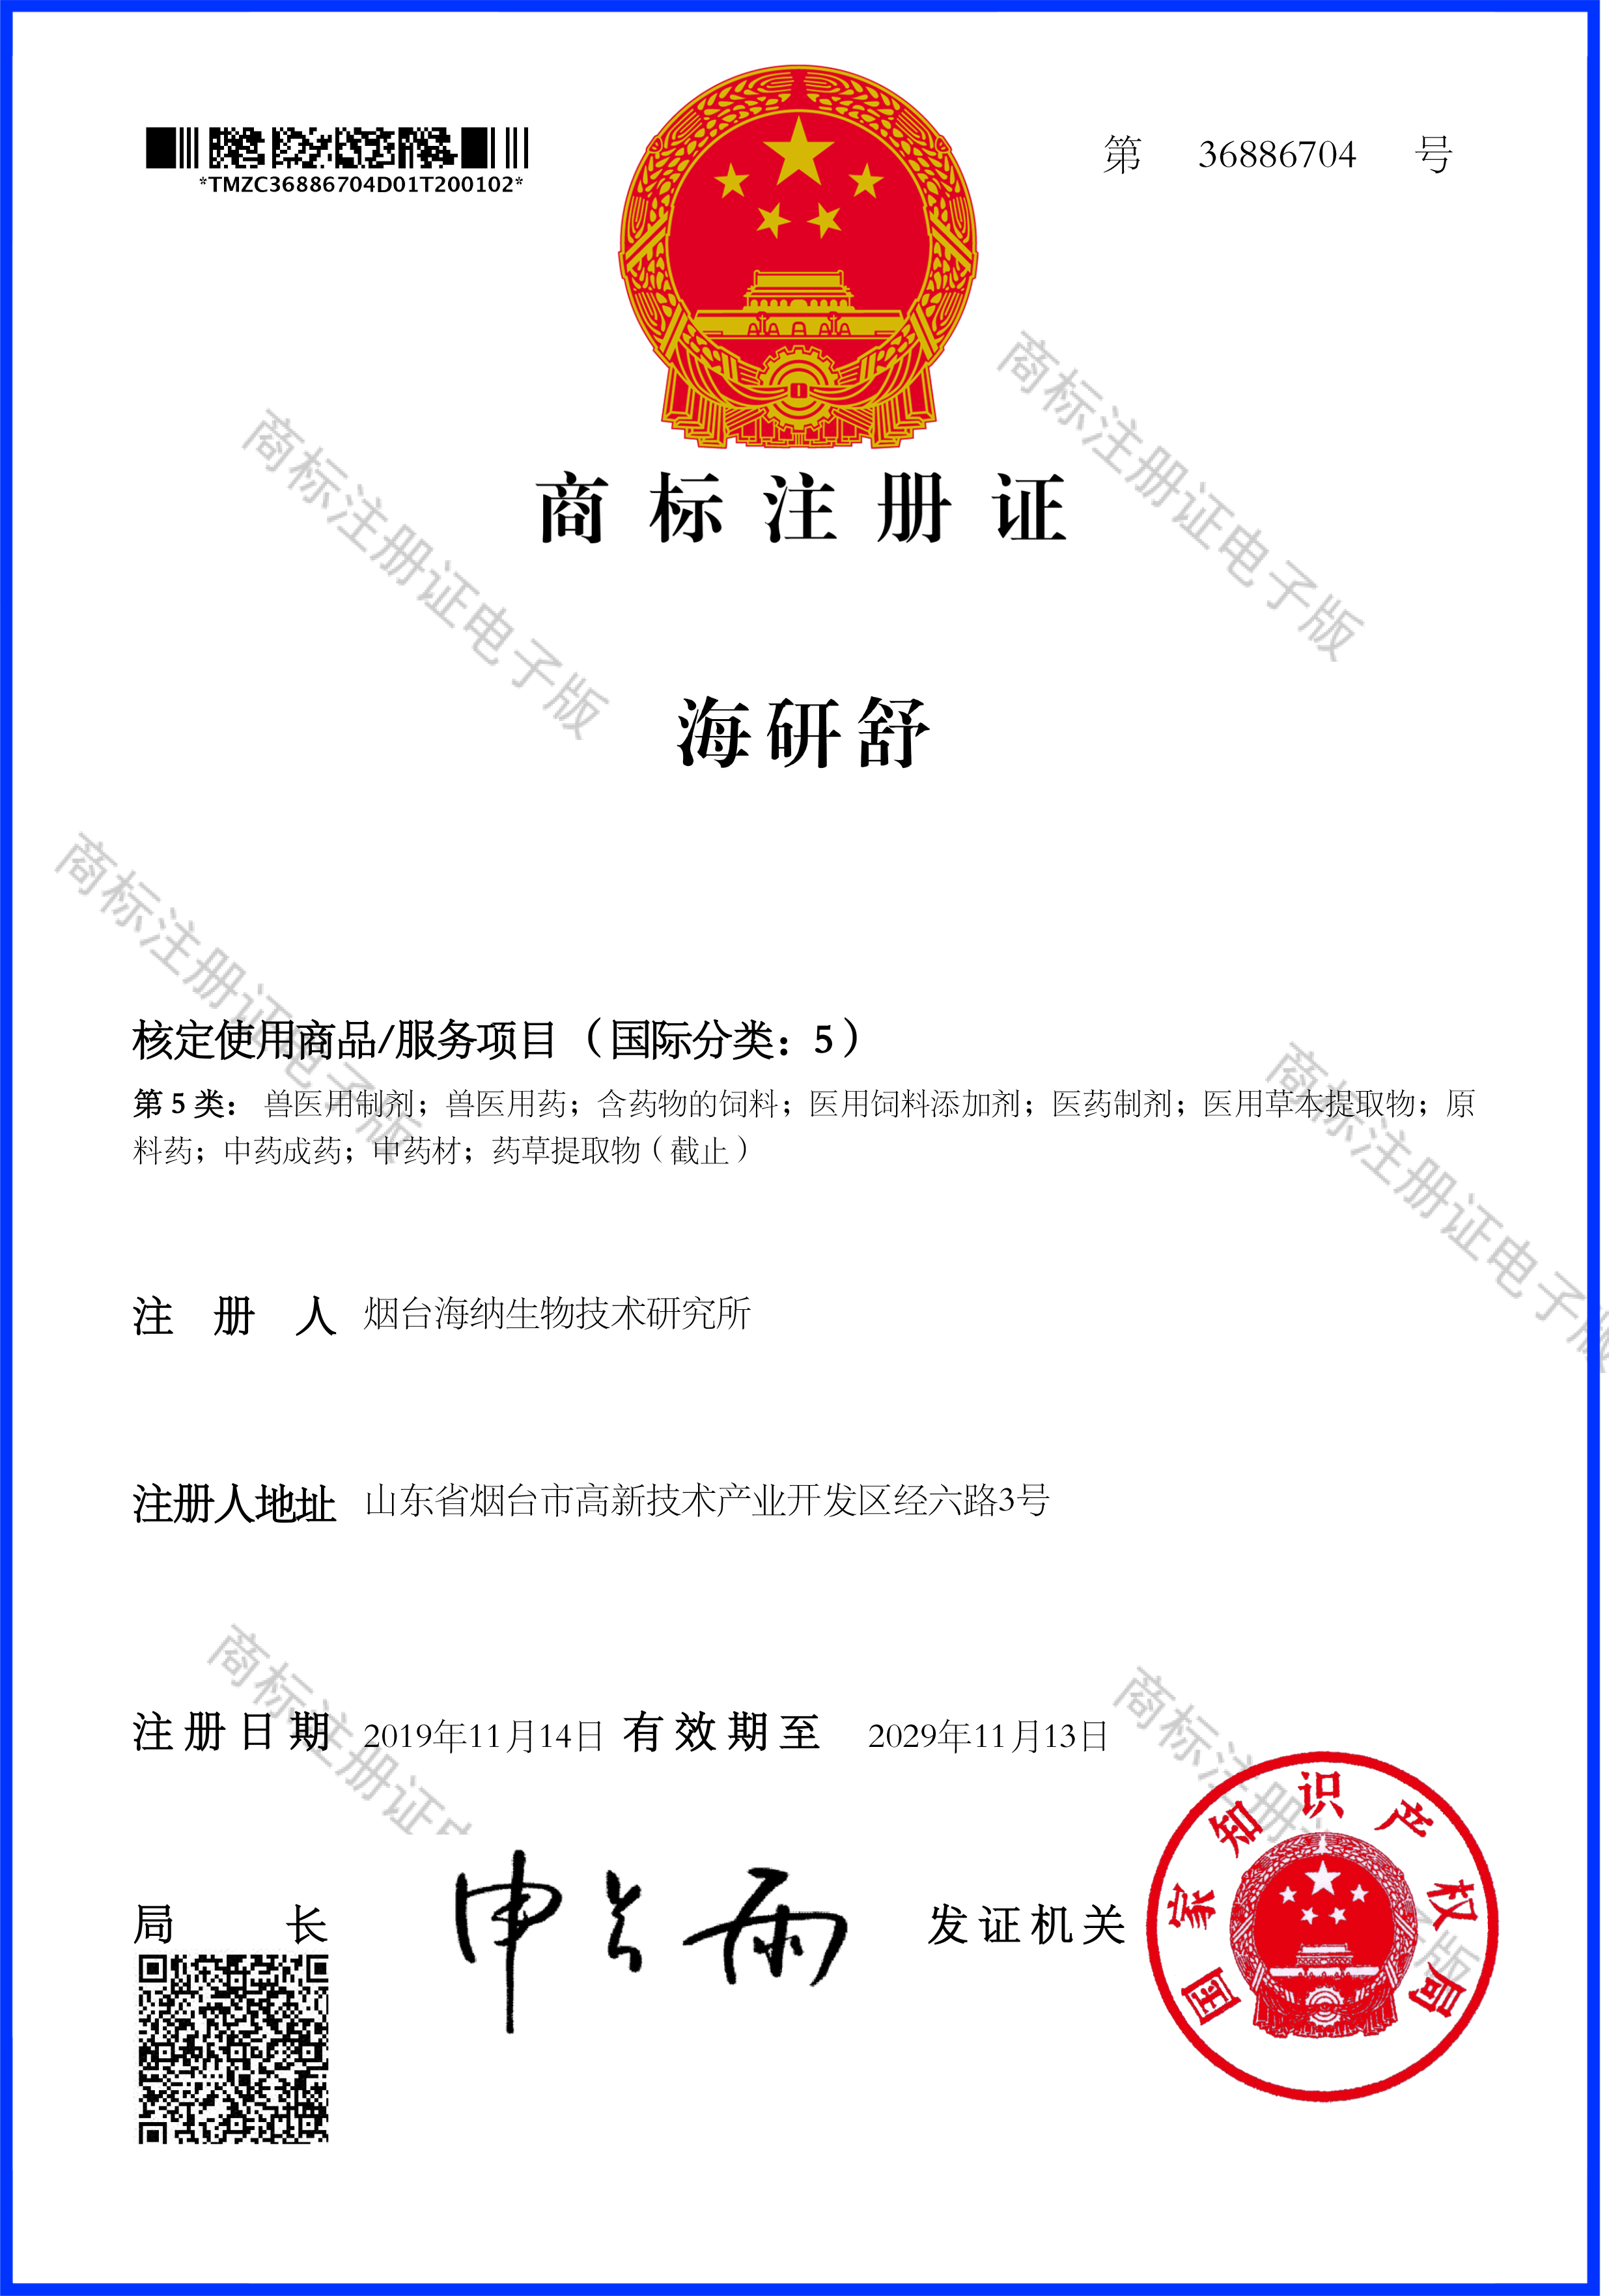 熱烈祝賀公司成功取得“海研舒”國家商標注冊證書